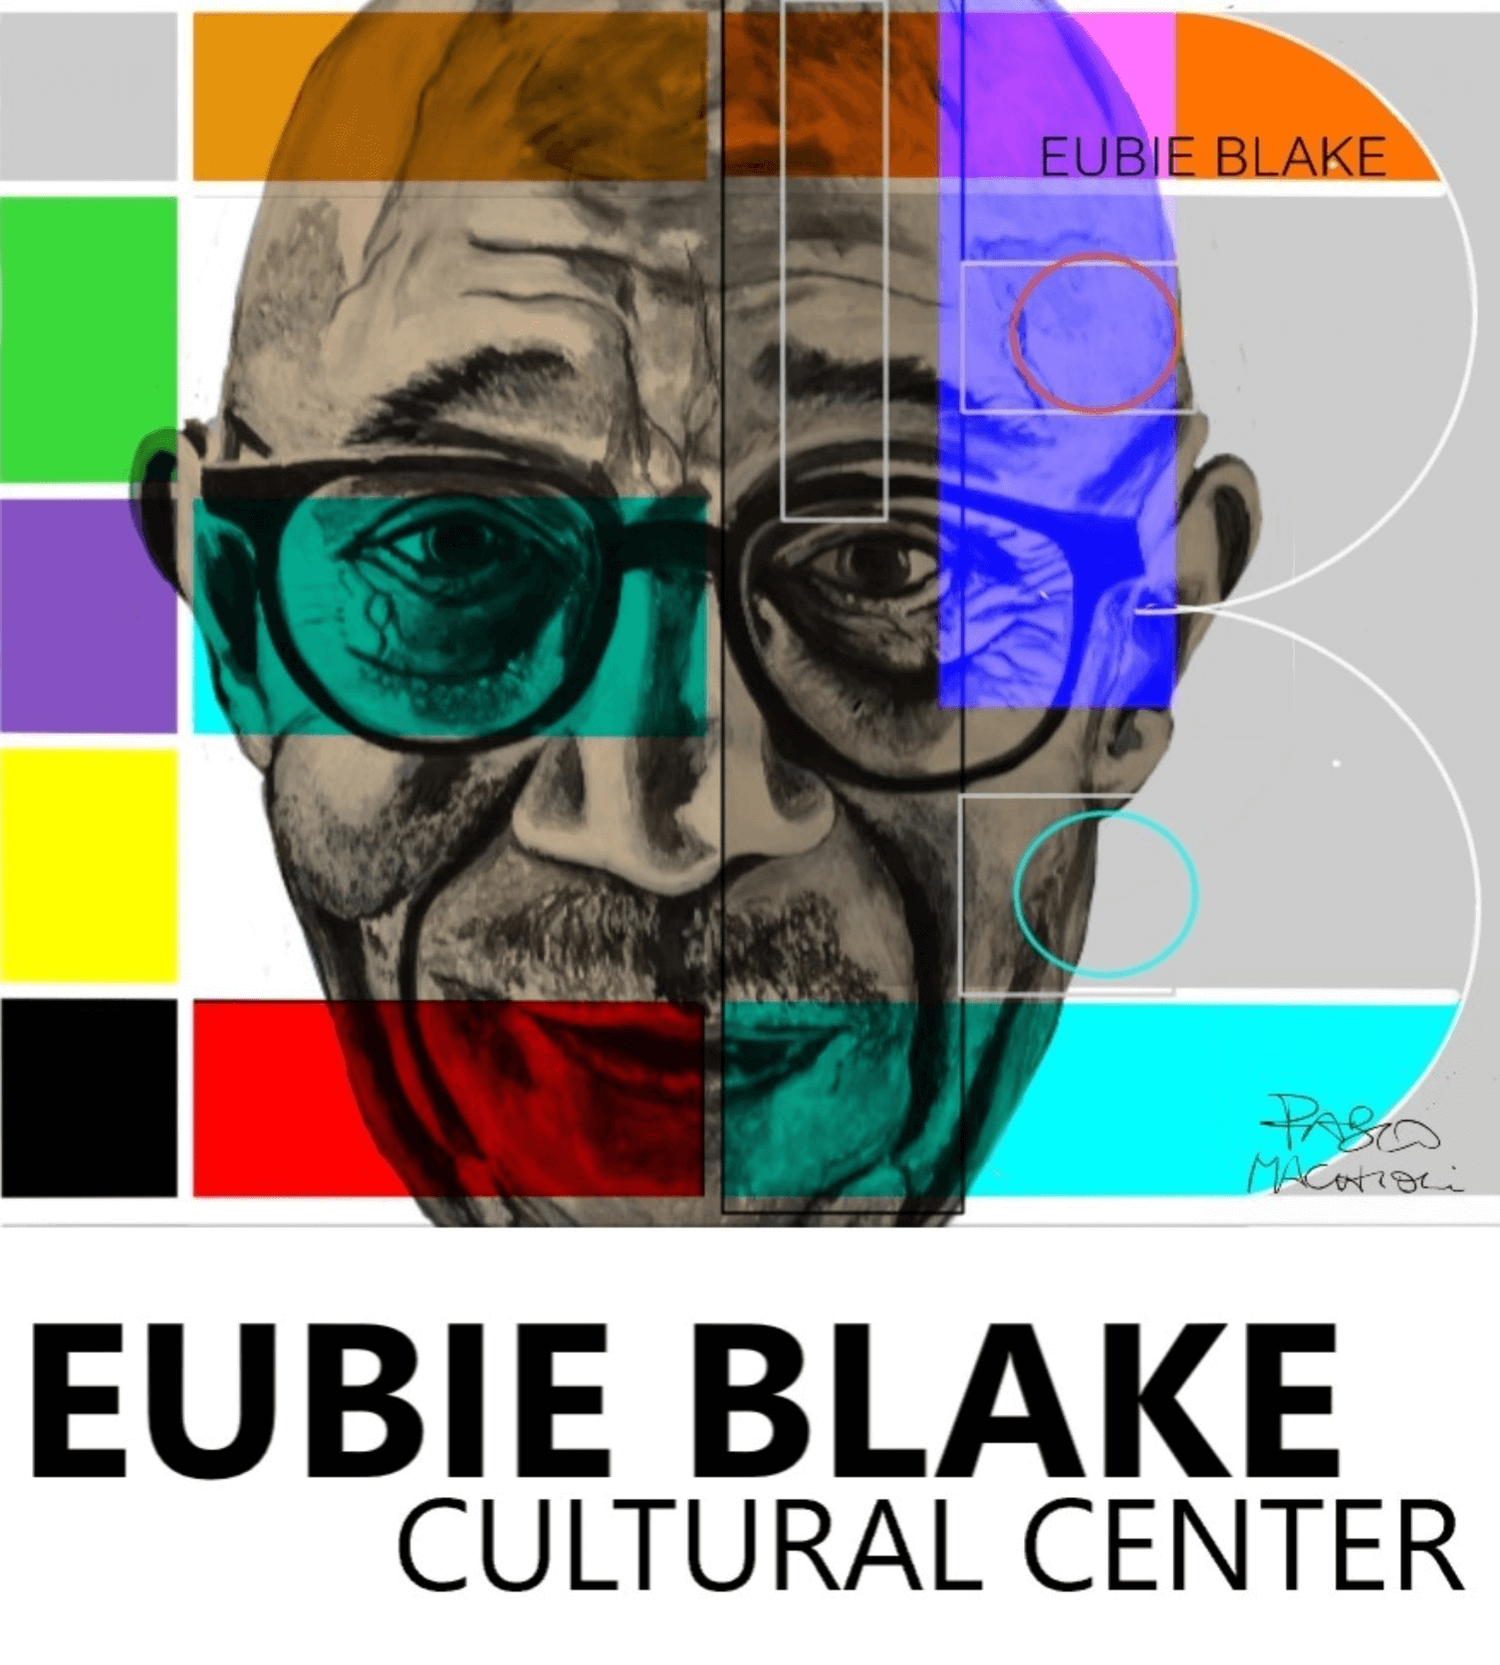 Eubie Blake Cultural Center